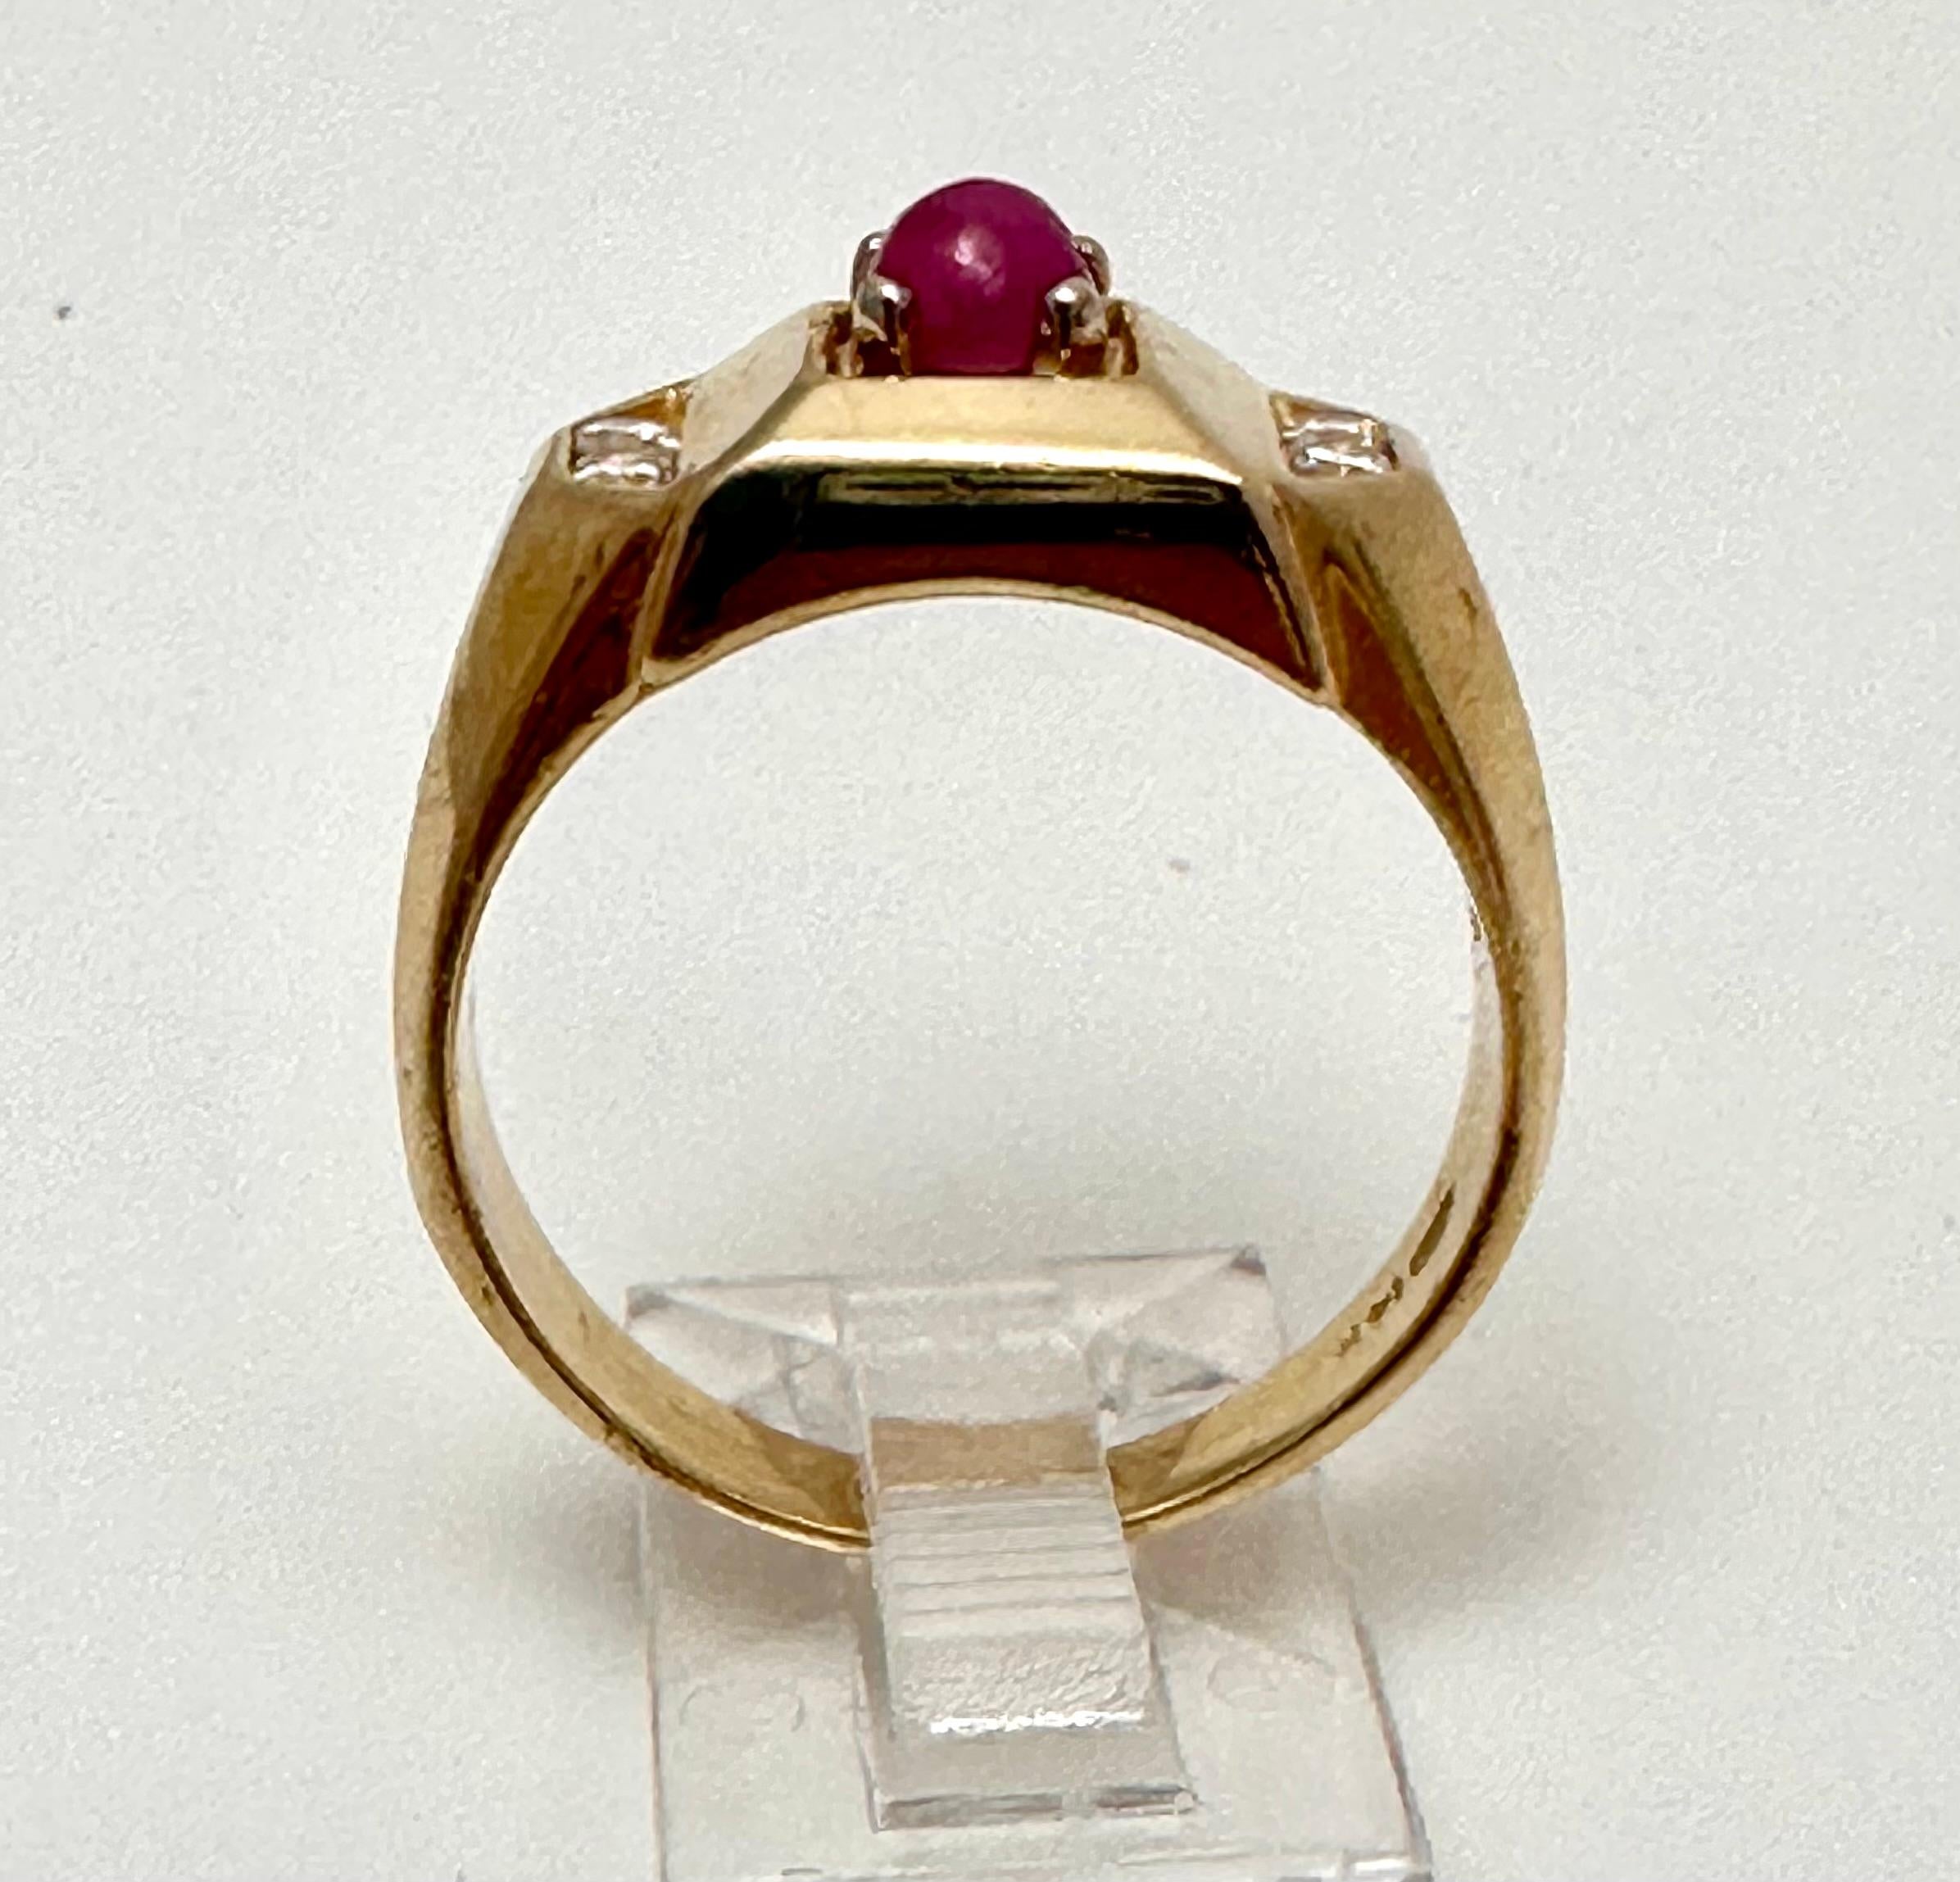 14k Gelbgold ca. 5mm Cabochon Rubin mit 4 runden Diamanten an der Seite Ring Größe 9 1/2

Der Rubin ist als Schutzstein bekannt, der Glück und Leidenschaft in das Leben seines Trägers bringen kann. Abgesehen von seiner roten Farbe ist der Rubin